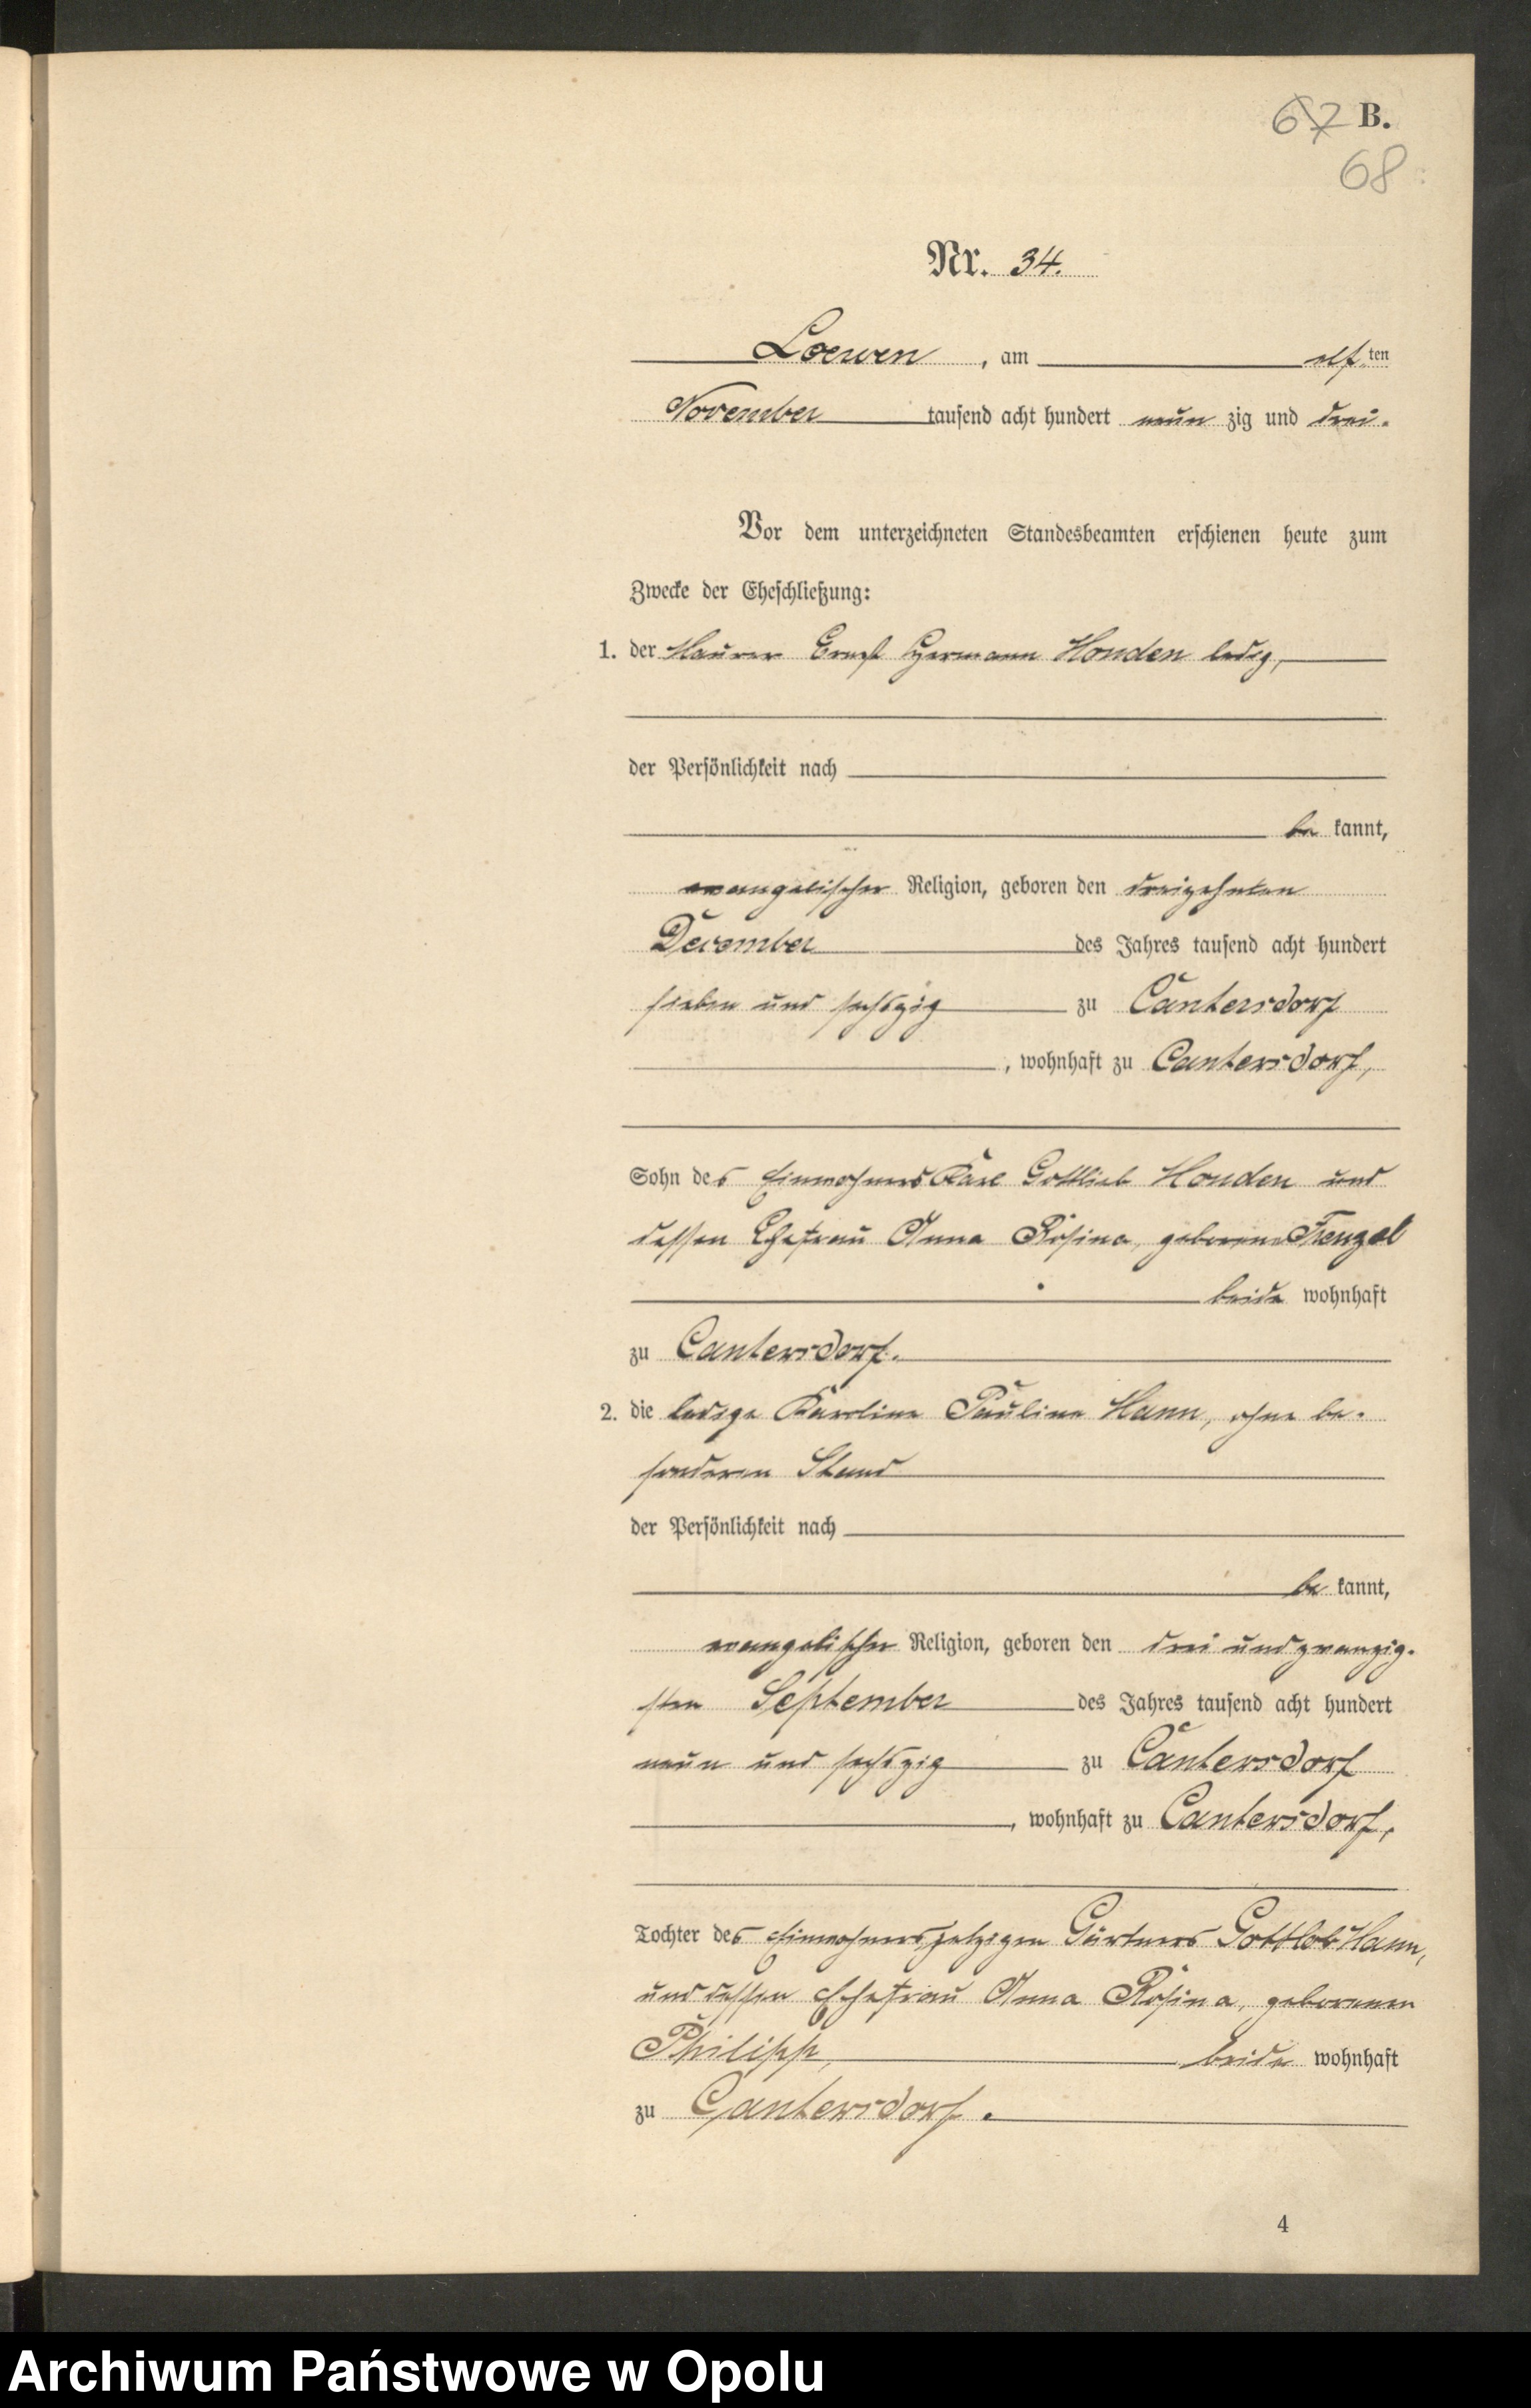 Skan z jednostki: Urząd Stanu Cywilnego w Lewinie Brzeskim. Księga miejscowa akt małżeństwa za rok 1893